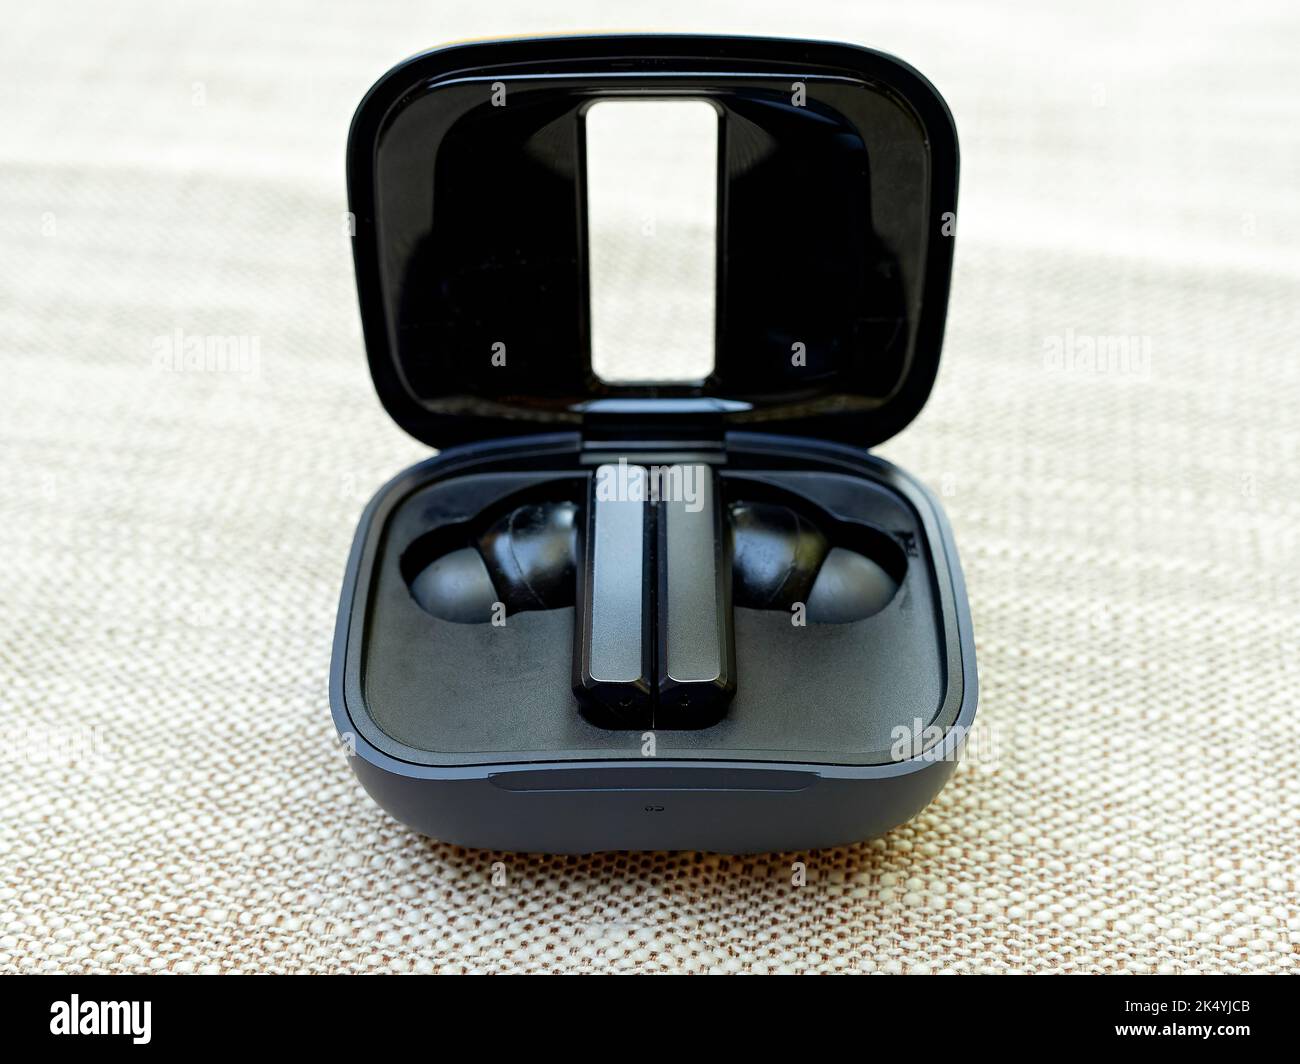 Schwarze Ohrstöpsel, die zum privaten Hören von Musik, Videos oder Podcasts in einem offenen Ohrstöpsel verwendet werden. Stockfoto